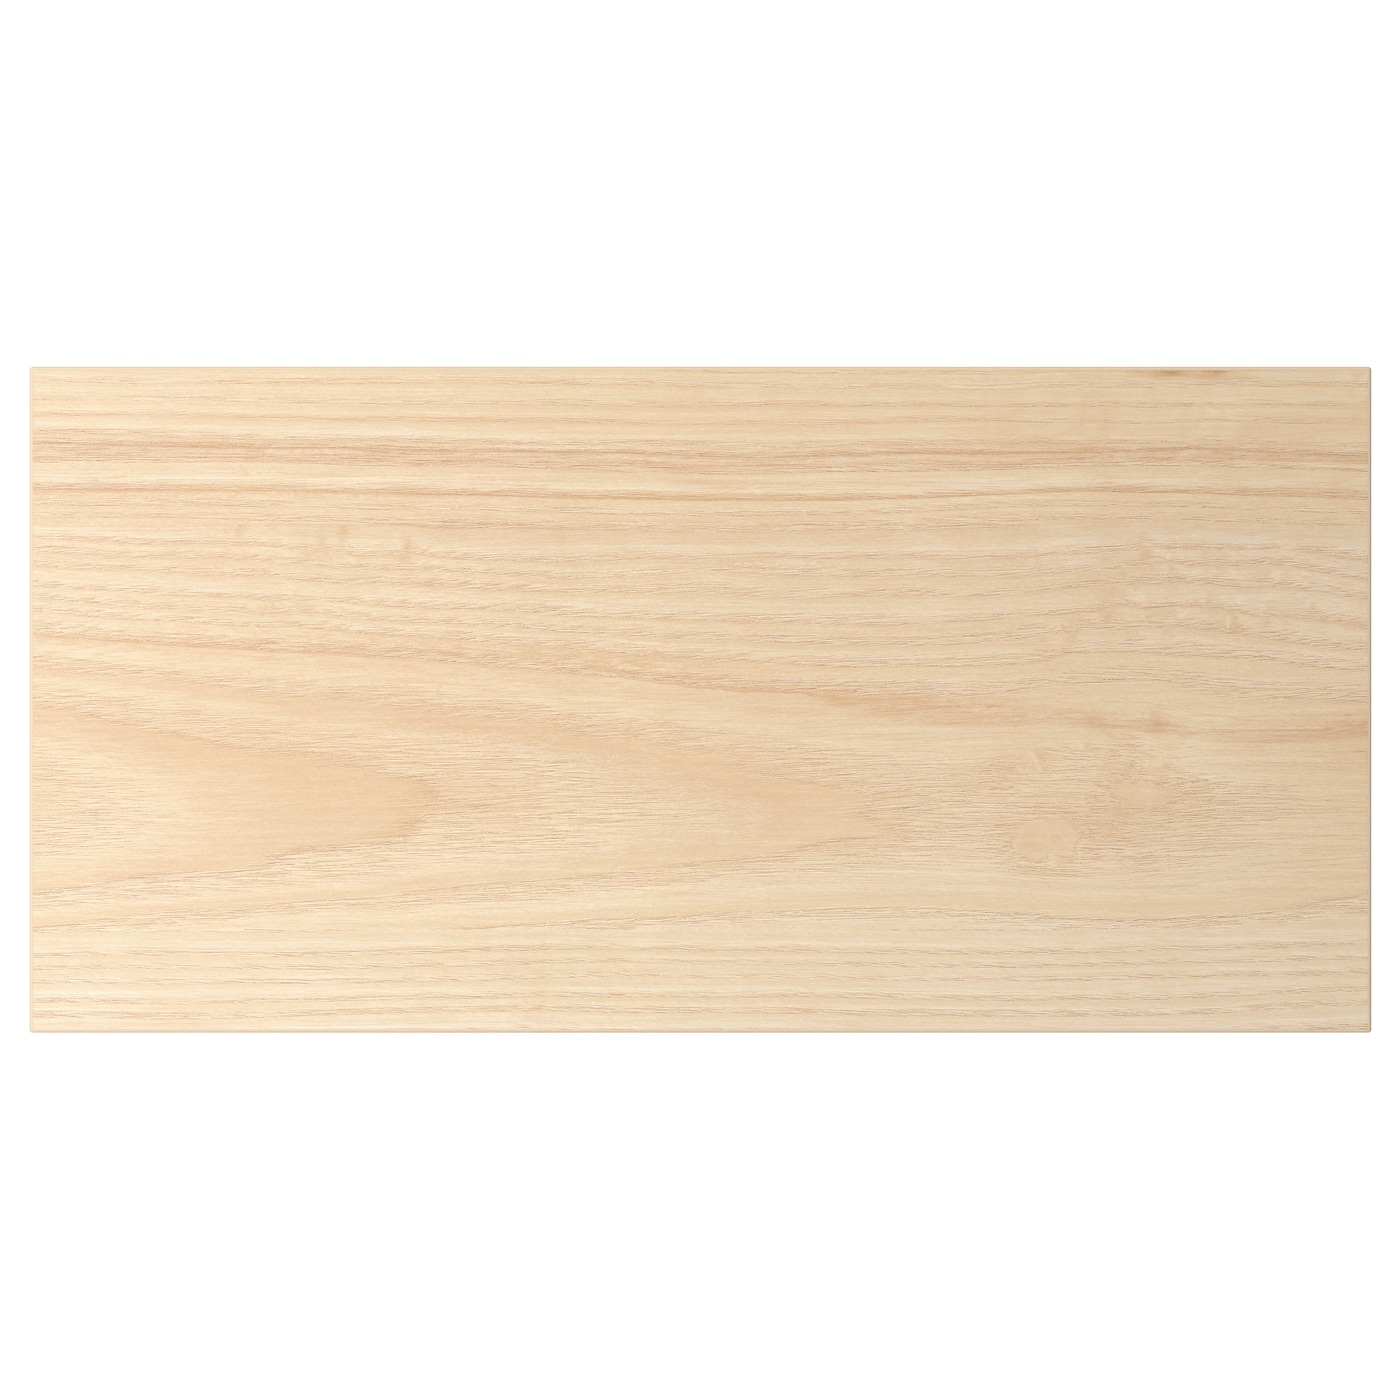 Фронтальная панель для ящика - IKEA ASKERSUND, 20х40 см, ясень, АСКЕРСУНД ИКЕА